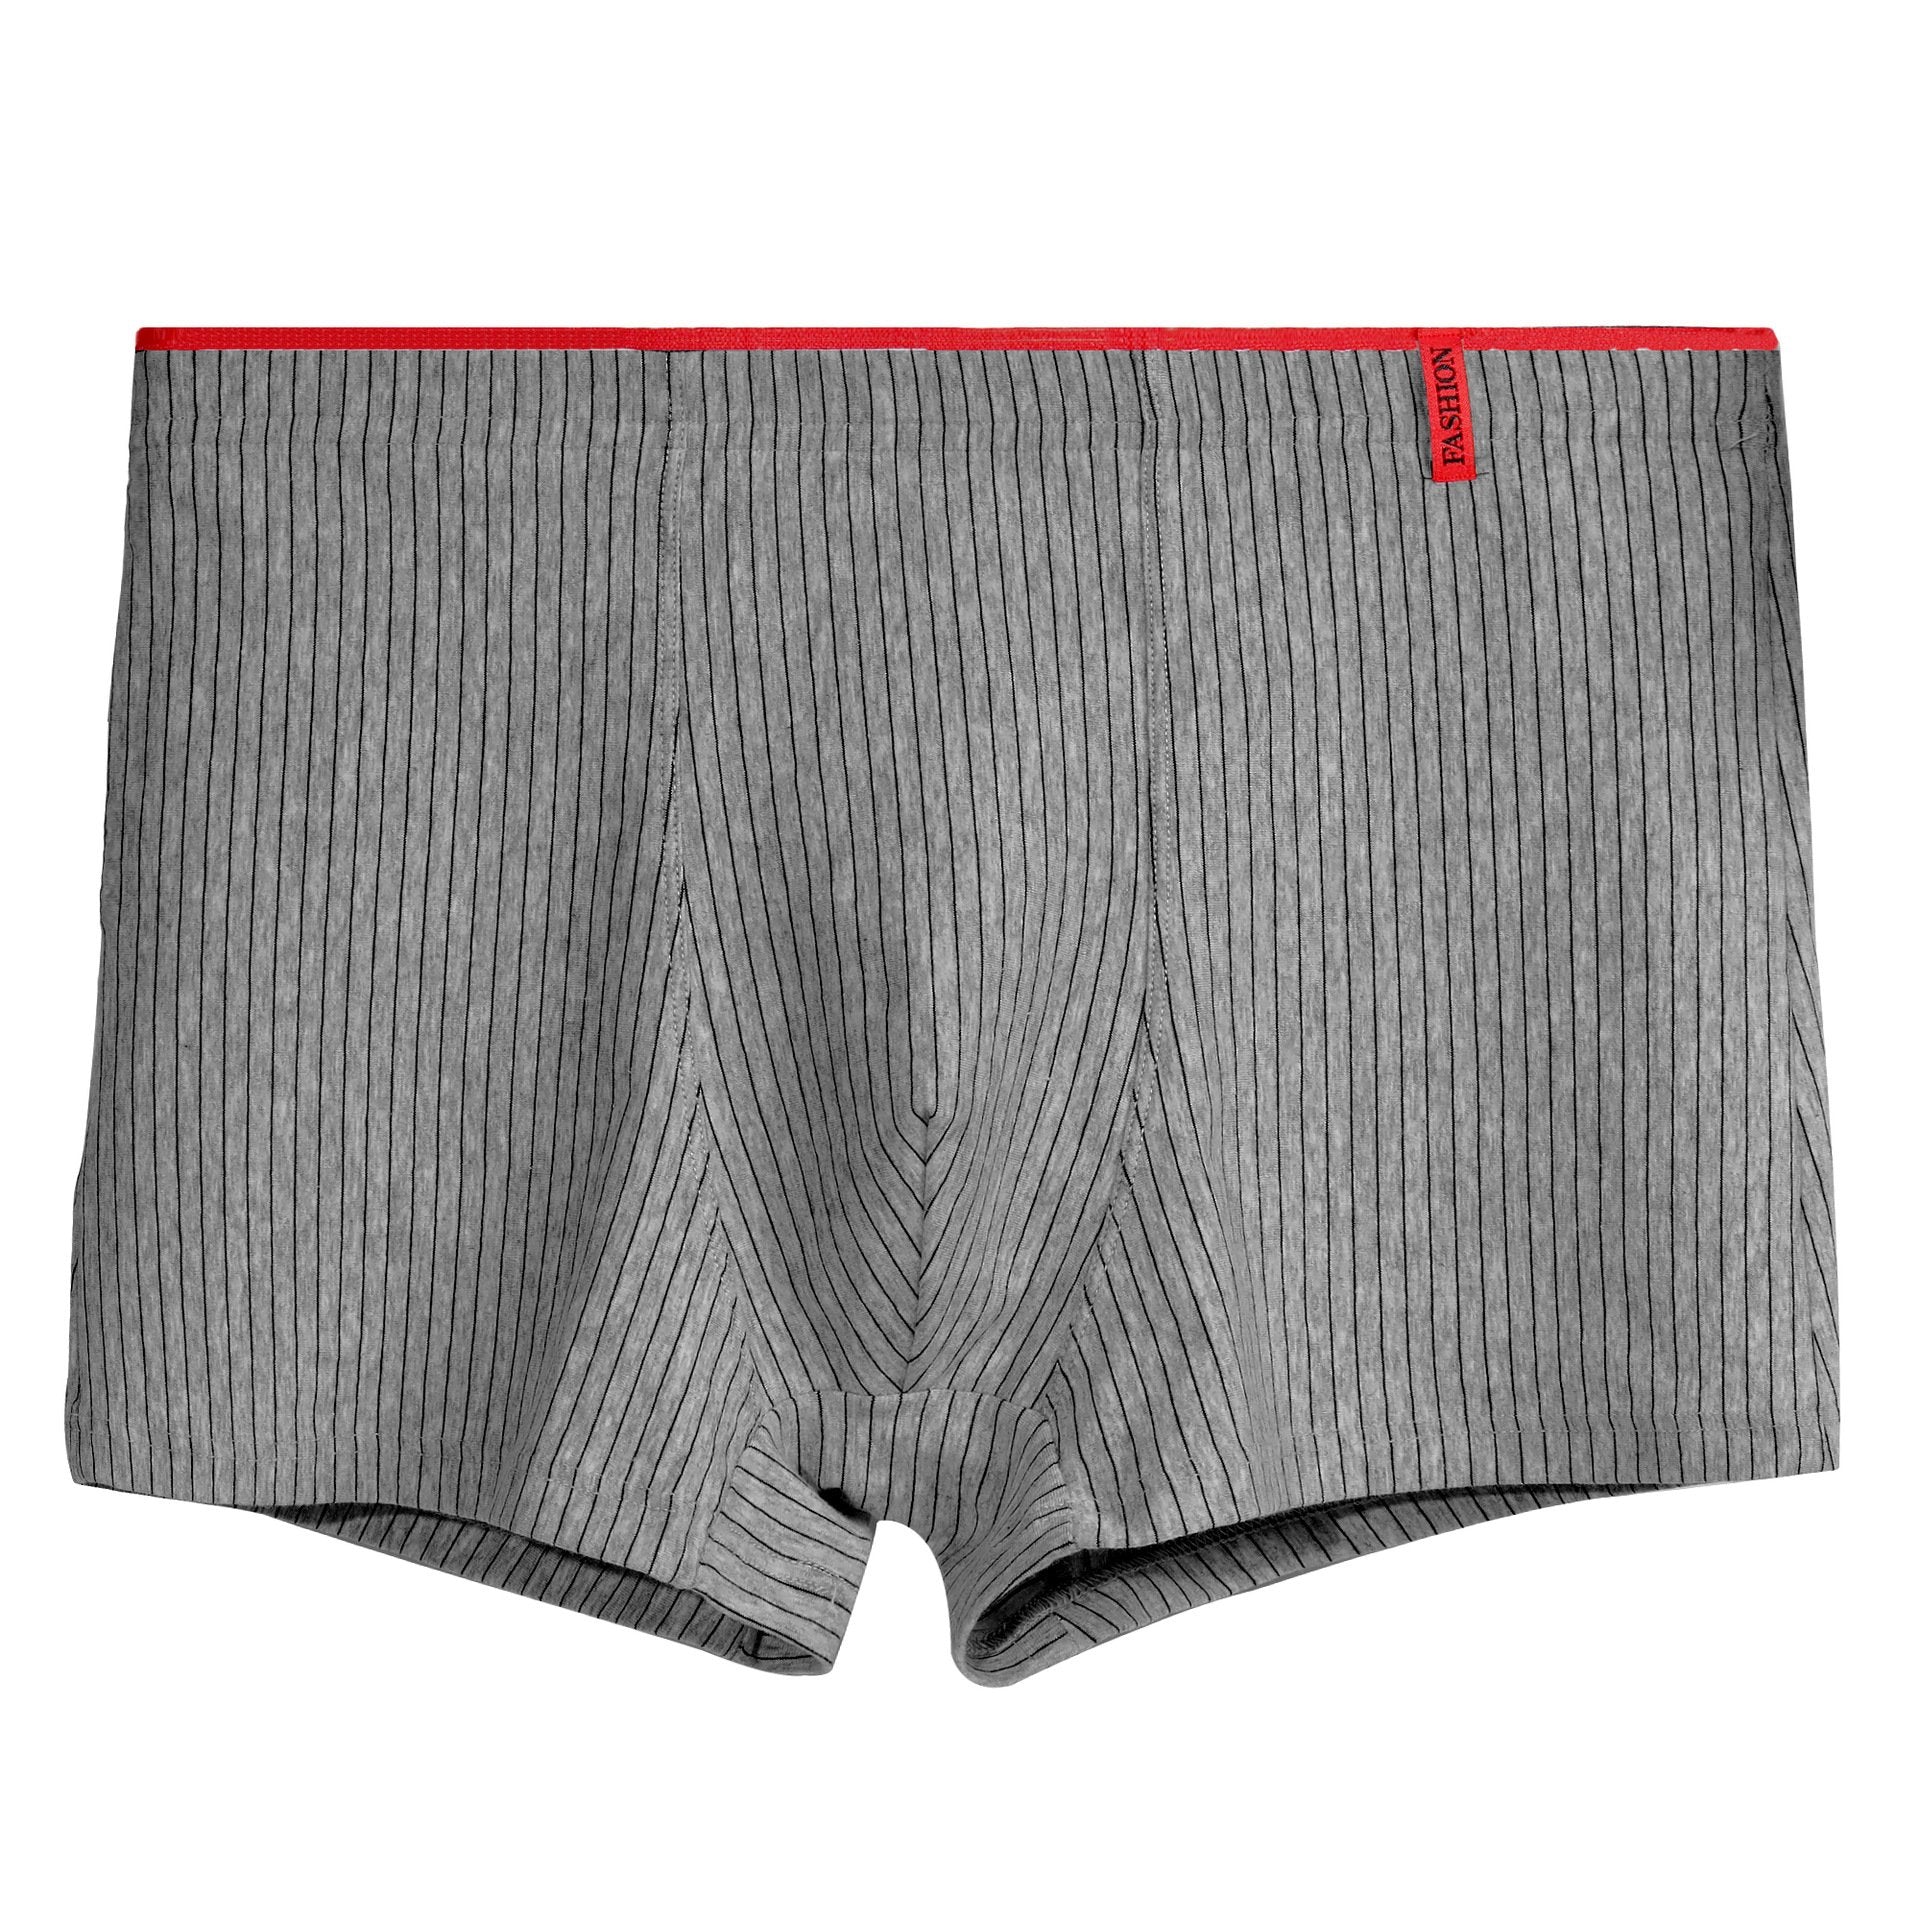 Men's Boxers Underwear Briefs